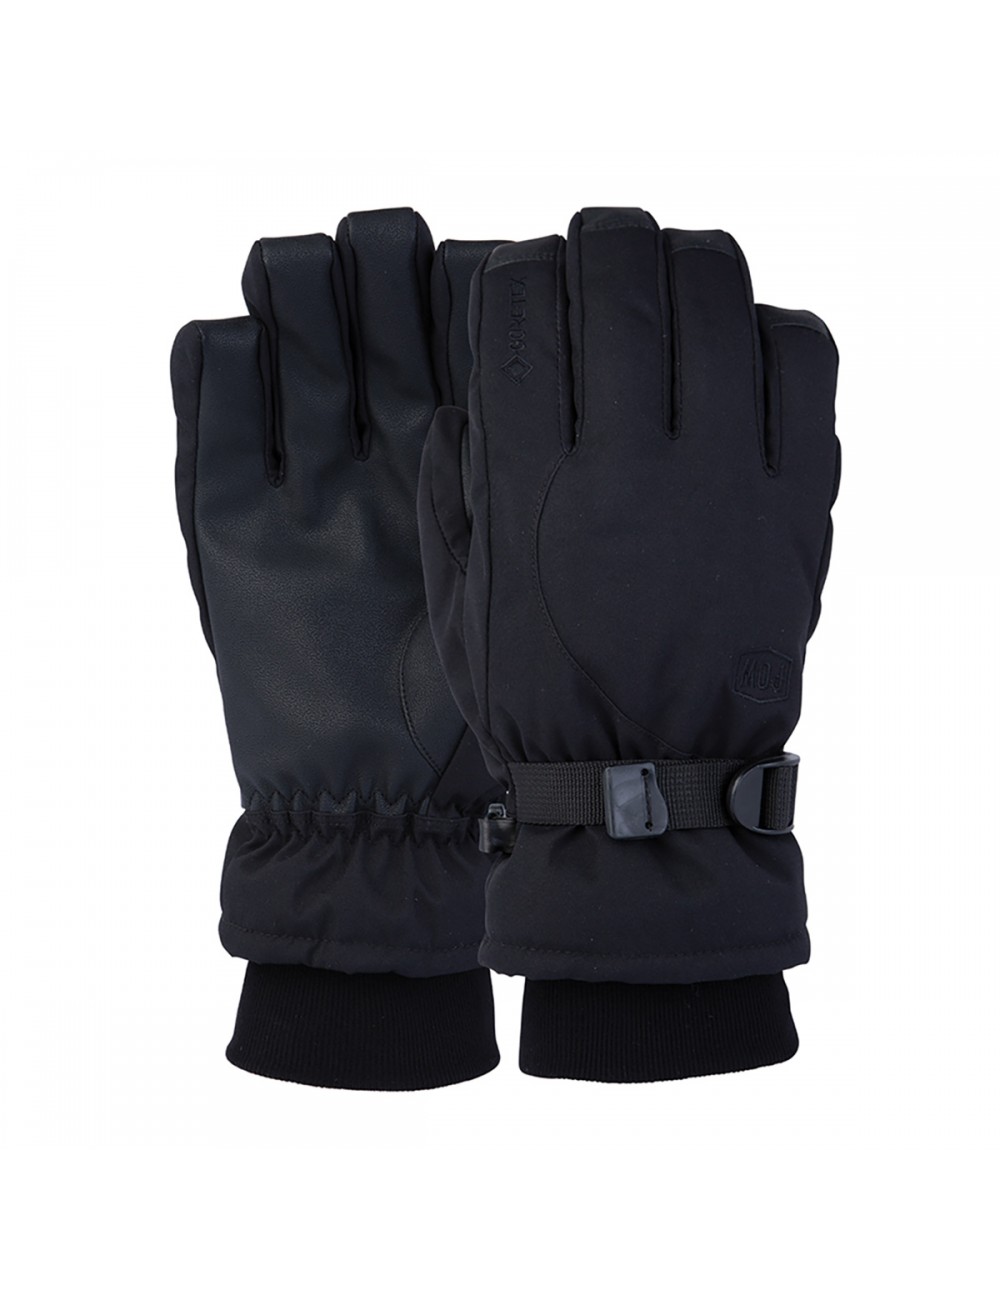 POW Trench GTX Glove - Black